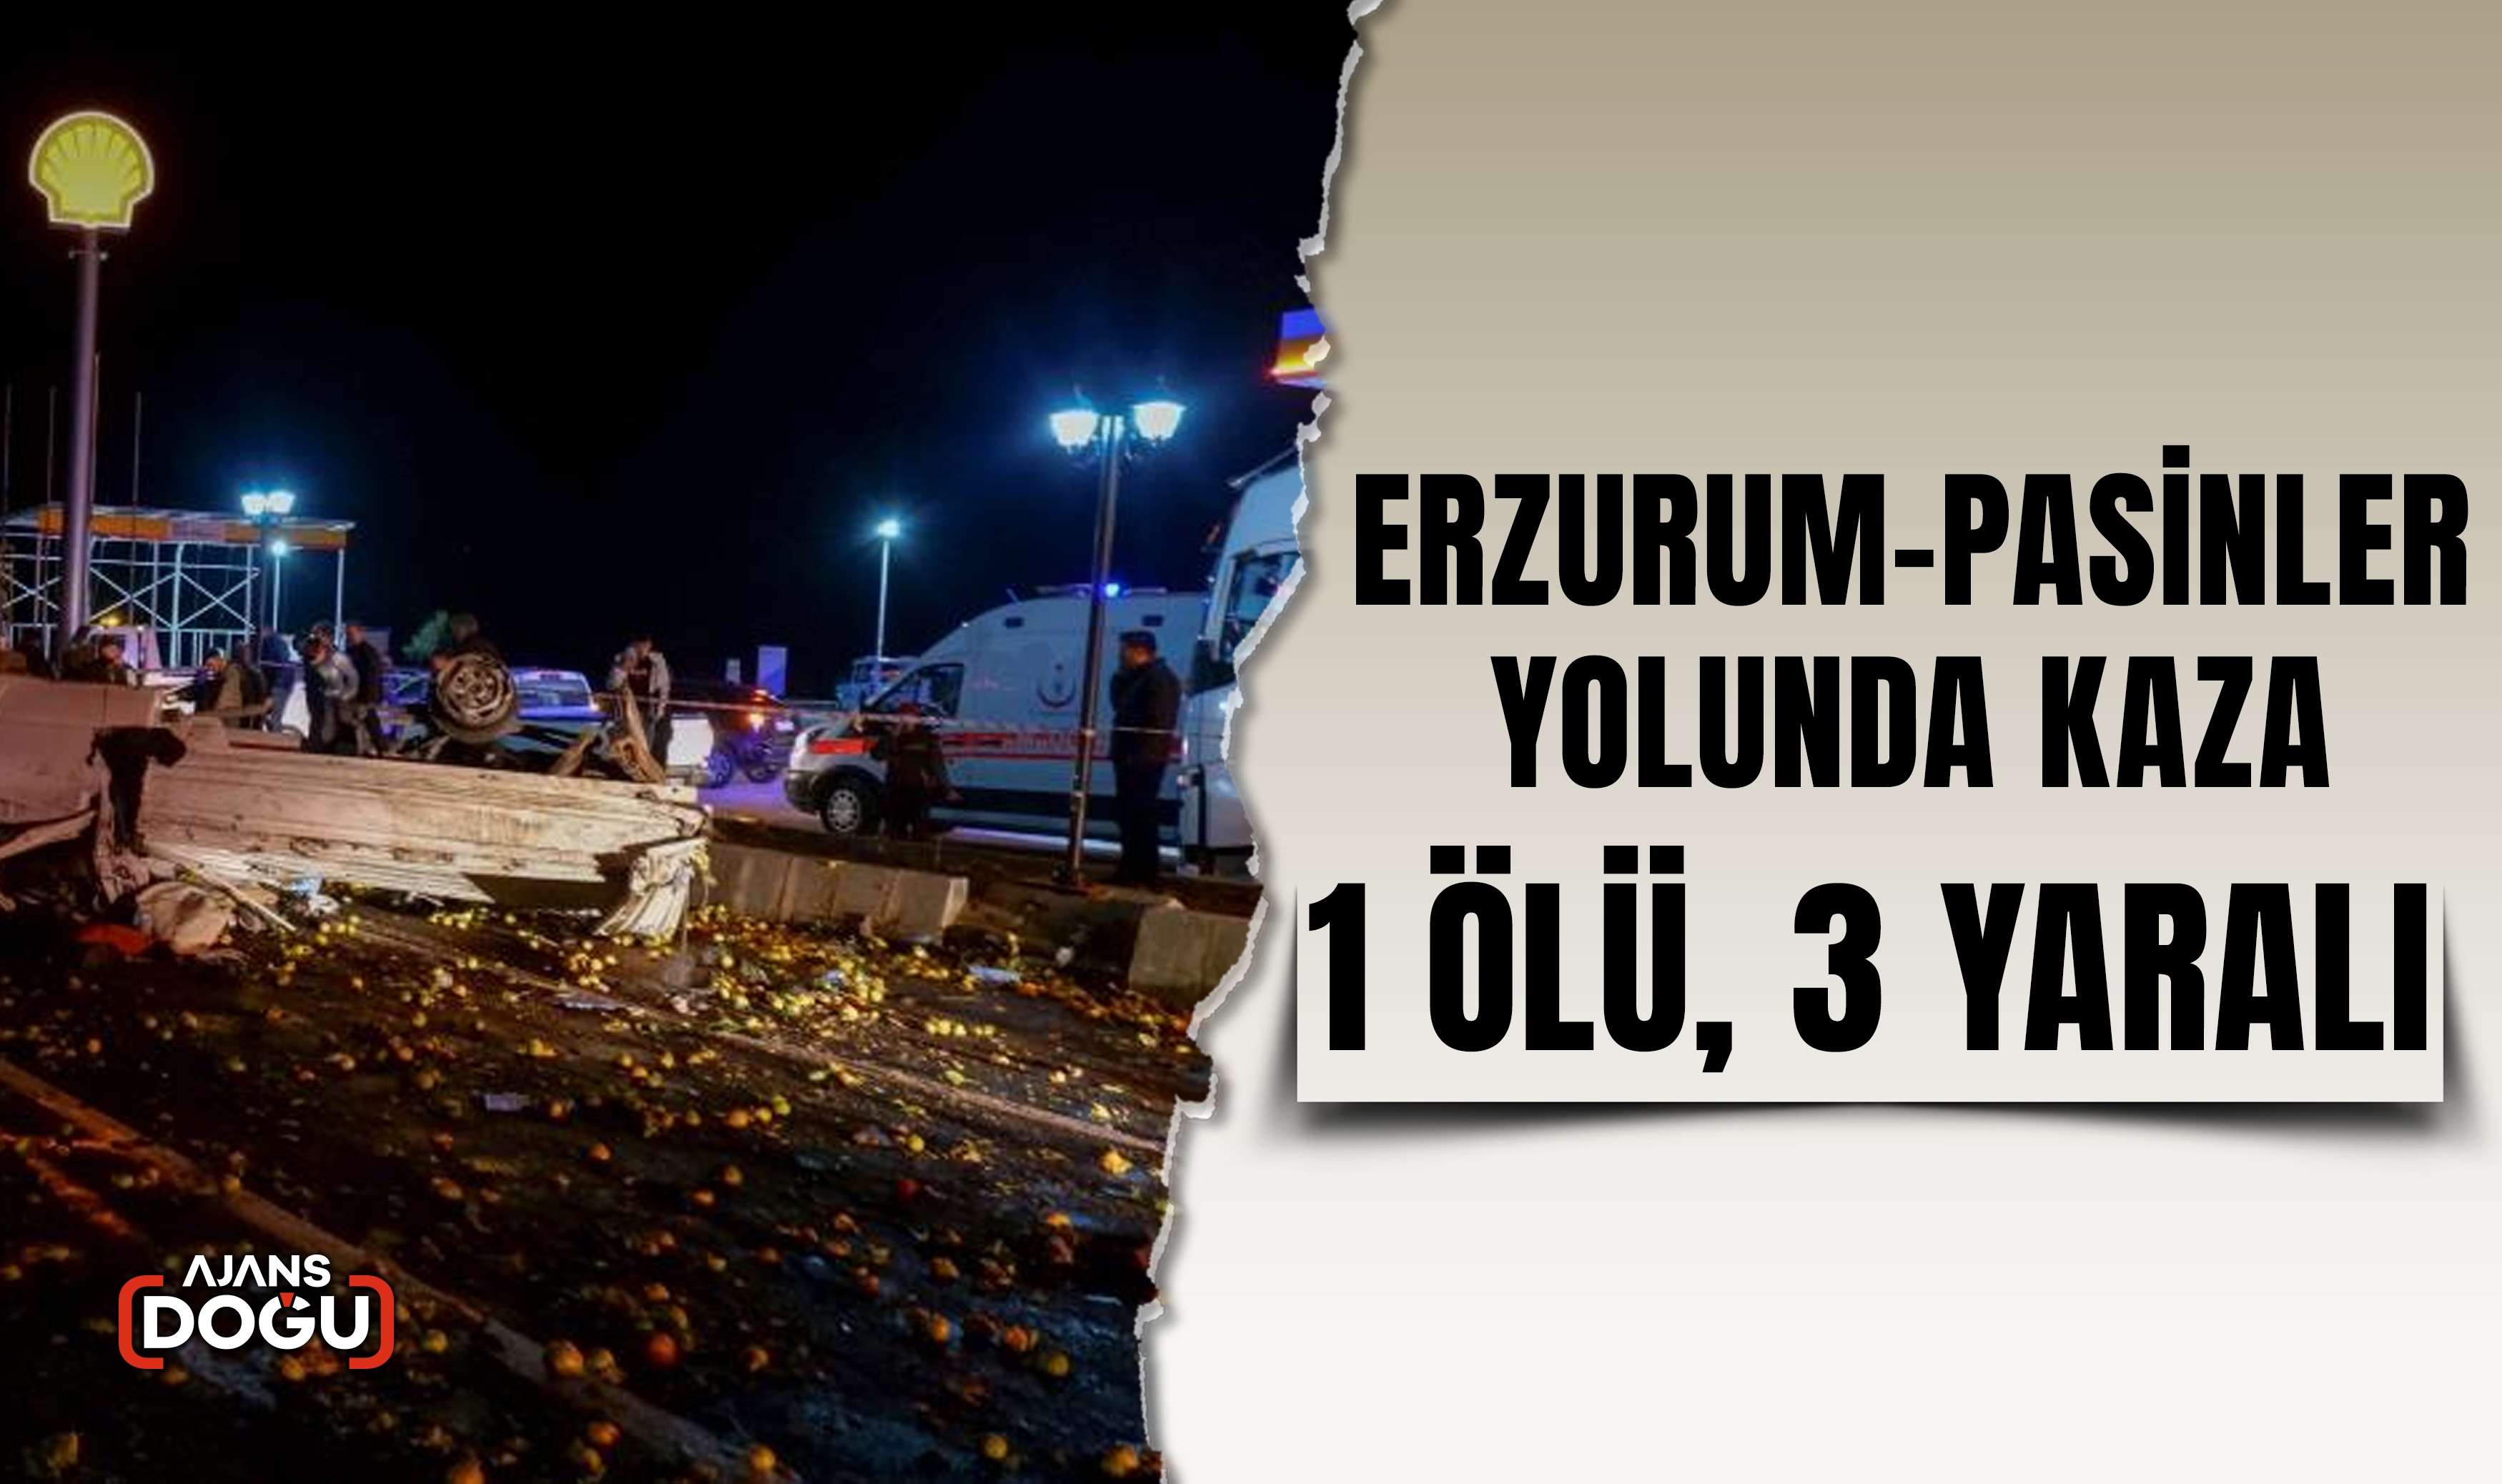 Erzurum-Pasinler yolunda kaza: 1 ölü, 3 yaralı